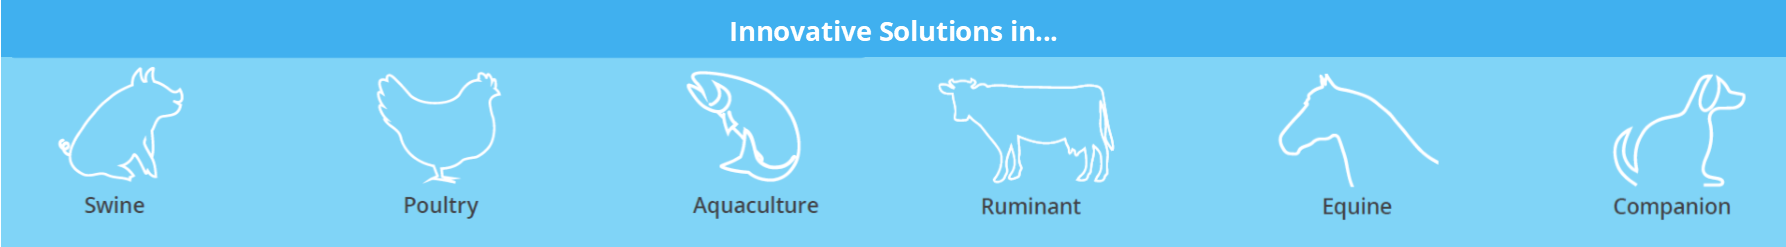 Animal Health Innovation, Innovative Solutions in...